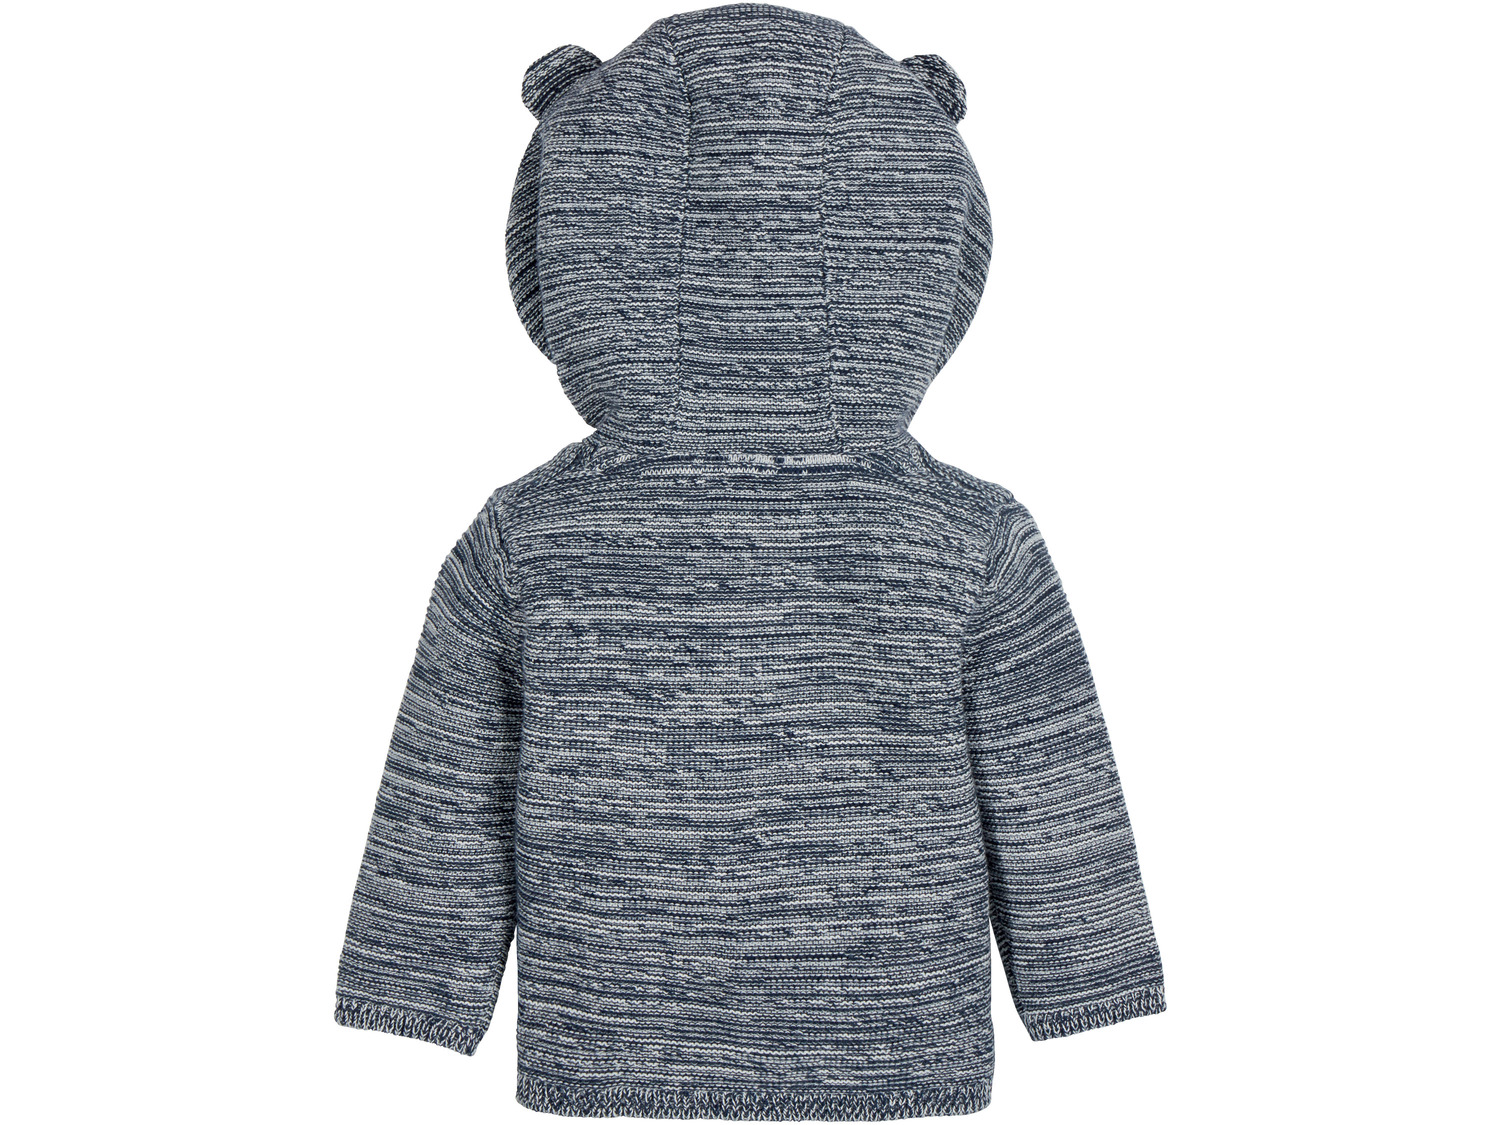 Sweterek niemowlęcy Lupilu, cena 19,99 PLN 
- rozmiary: 50-92
- 100% biobawełny
Dostępne ...